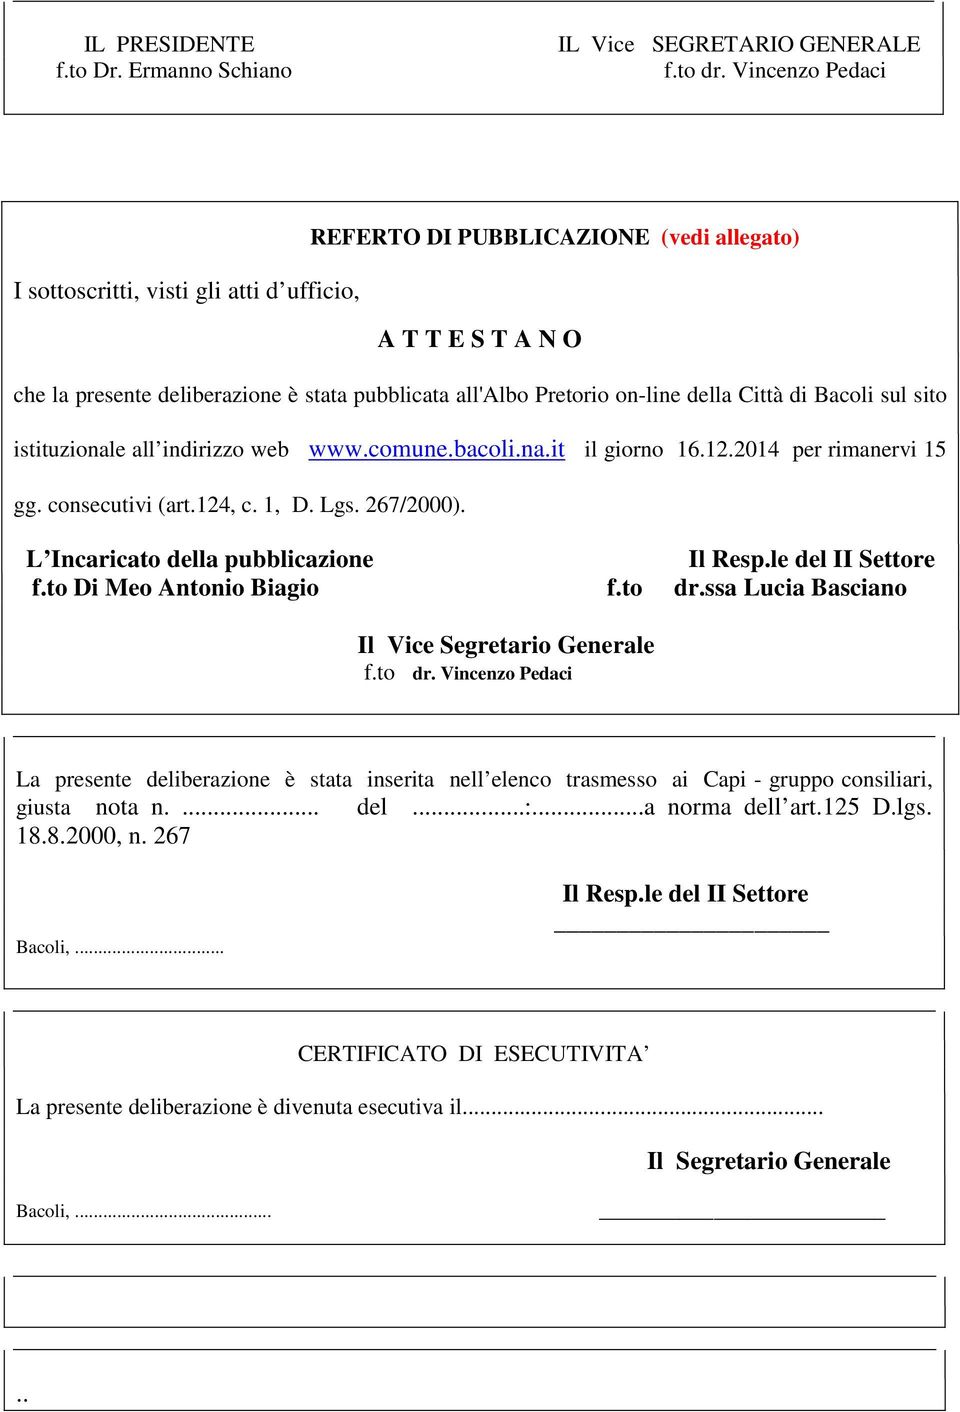 Città di Bacoli sul sito istituzionale all indirizzo web www.comune.bacoli.na.it il giorno 16.12.2014 per rimanervi 15 gg. consecutivi (art.124, c. 1, D. Lgs. 267/2000).